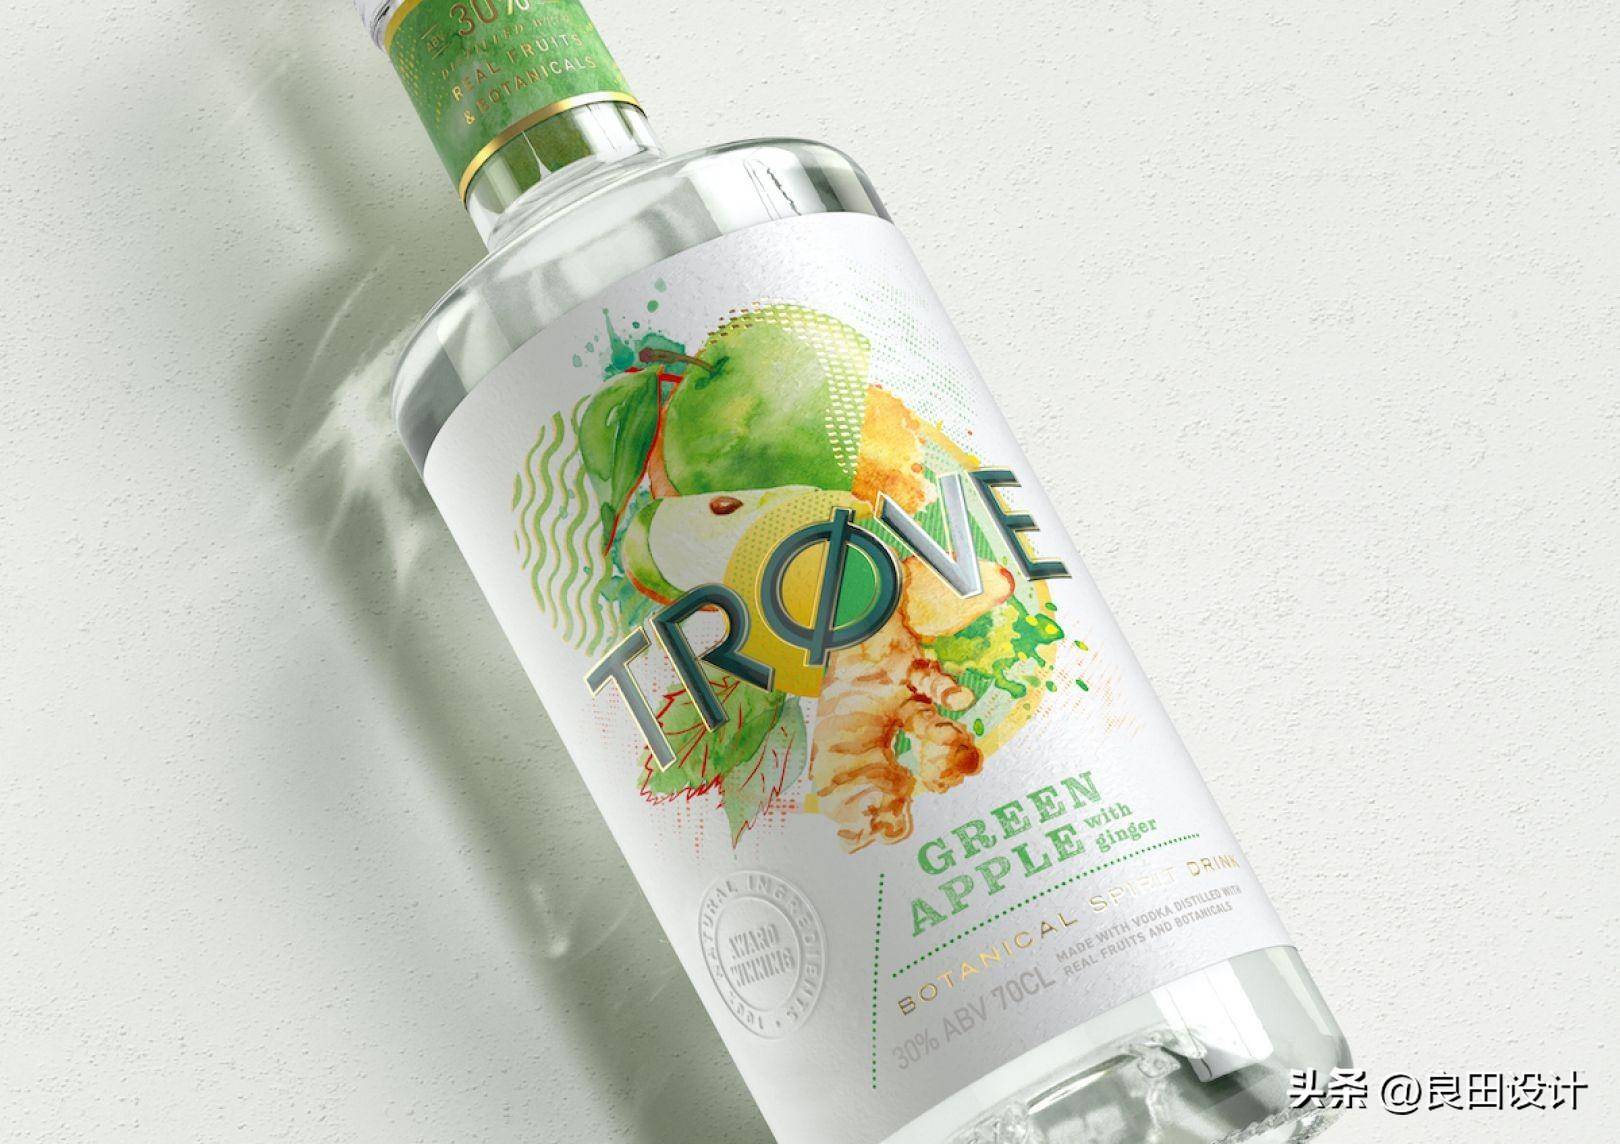 苹果主题插图手绘版:为新的低酒精、低热量烈酒品牌 TRØVE 创作的酒包装设计